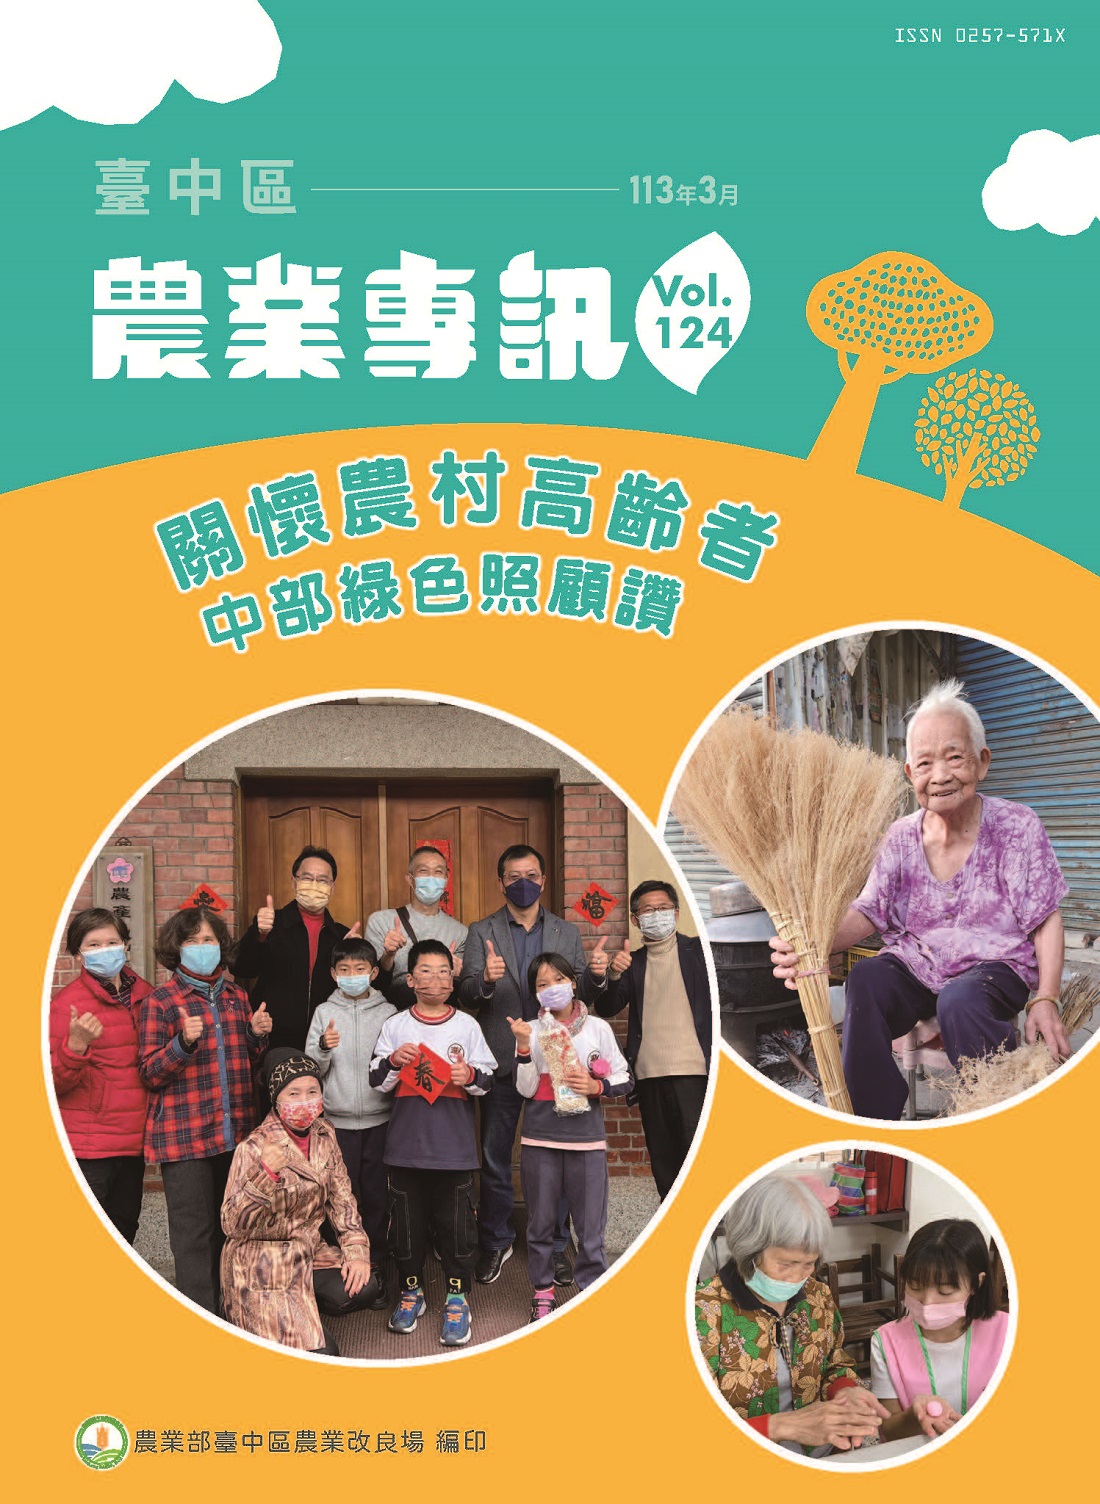 臺中區農業專訊第124期(113年3月)-關懷農村高齡者 中部綠色照顧讚